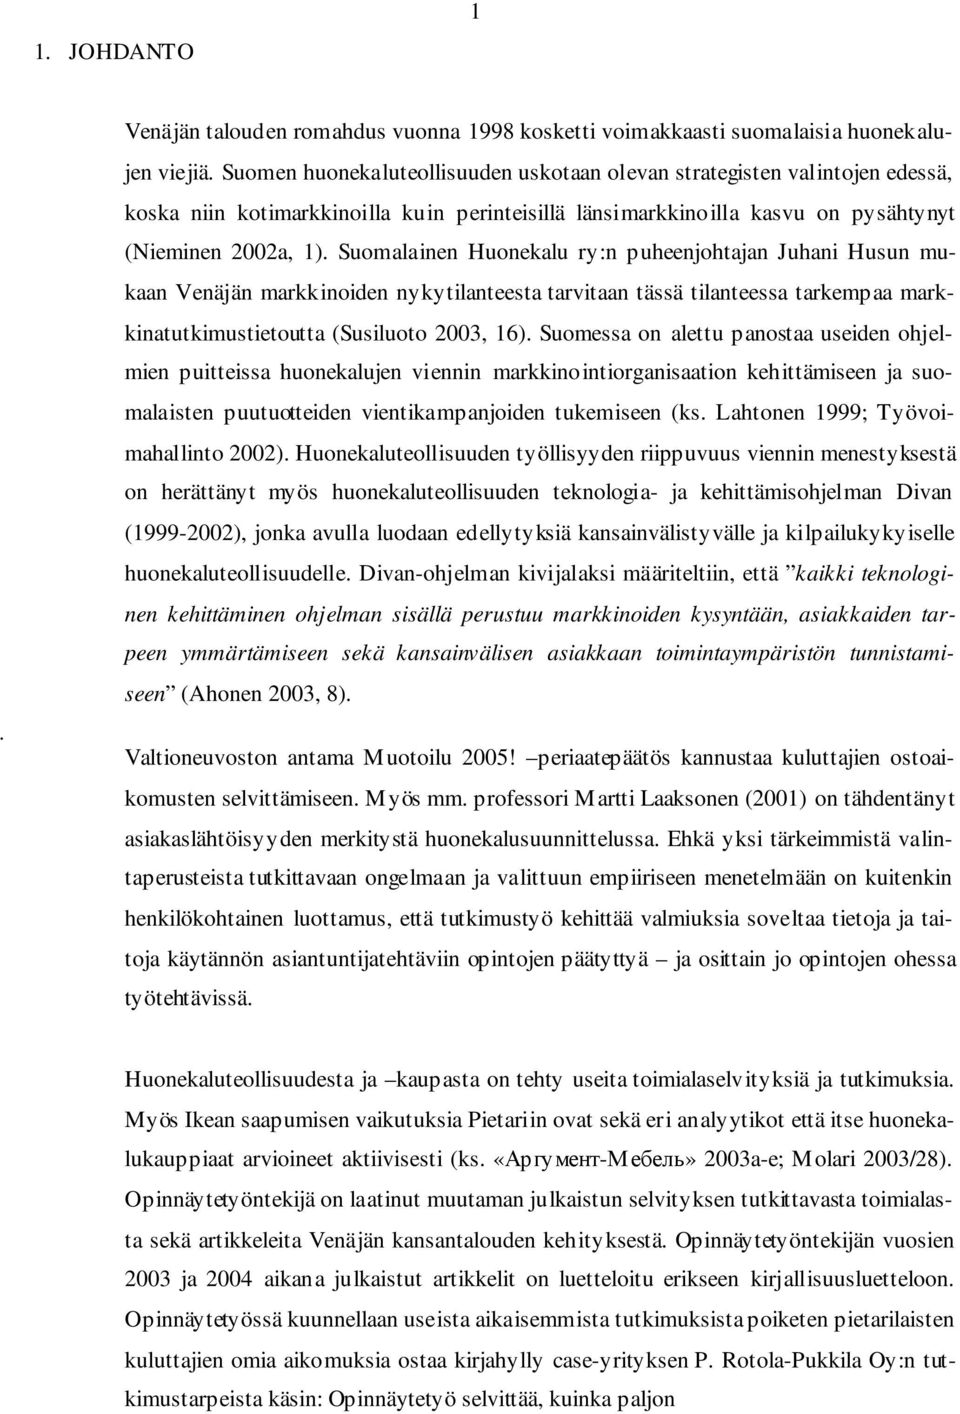 Suomalainen Huonekalu ry:n puheenjohtajan Juhani Husun mukaan Venäjän markkinoiden nykytilanteesta tarvitaan tässä tilanteessa tarkempaa markkinatutkimustietoutta (Susiluoto 2003, 16).